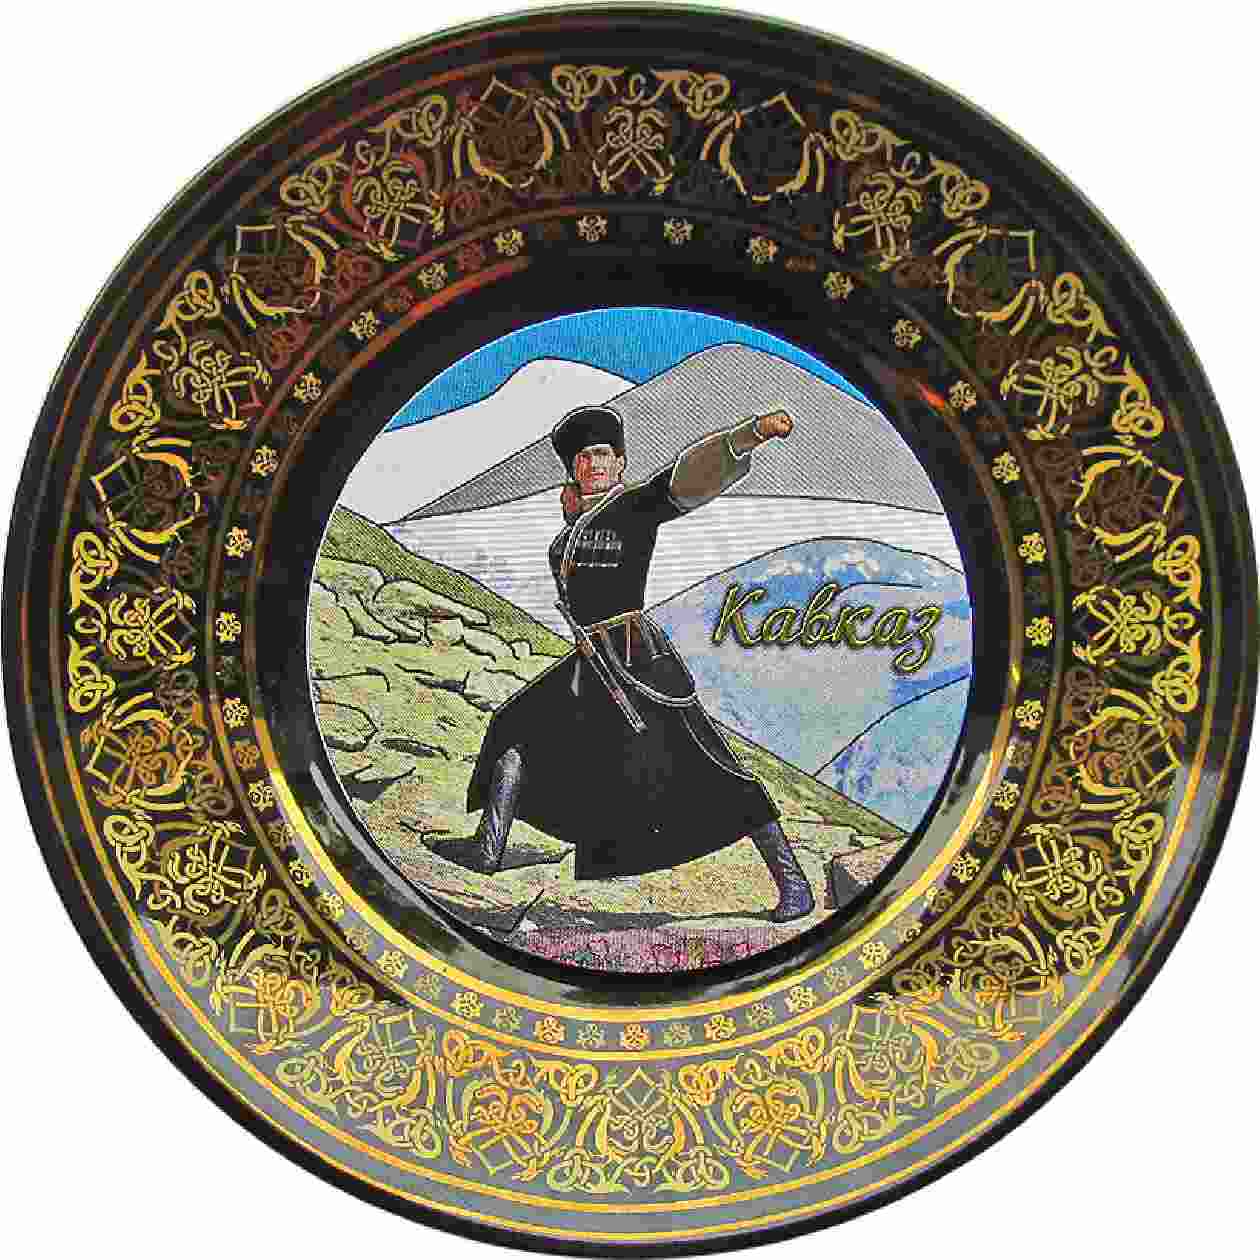 Тарелка сувенирная "Кавказ" с фольгированной вставкой и подставкой